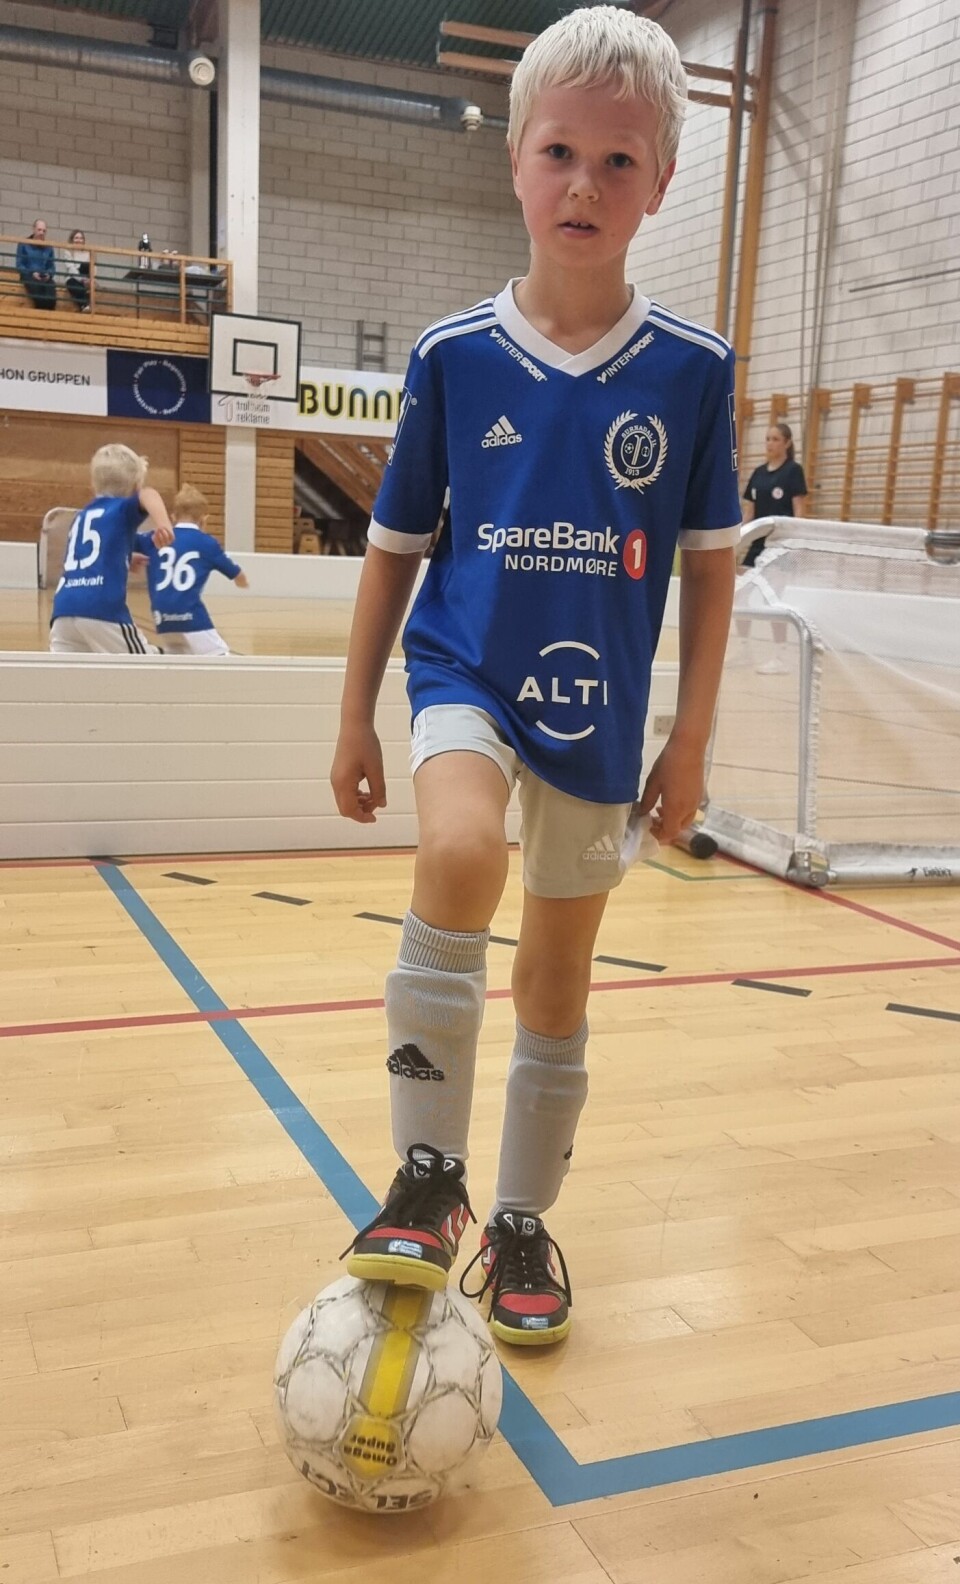 En gutt står med en foten på en fotball og har på seg en blå fotballtrøye og ser mot kamera